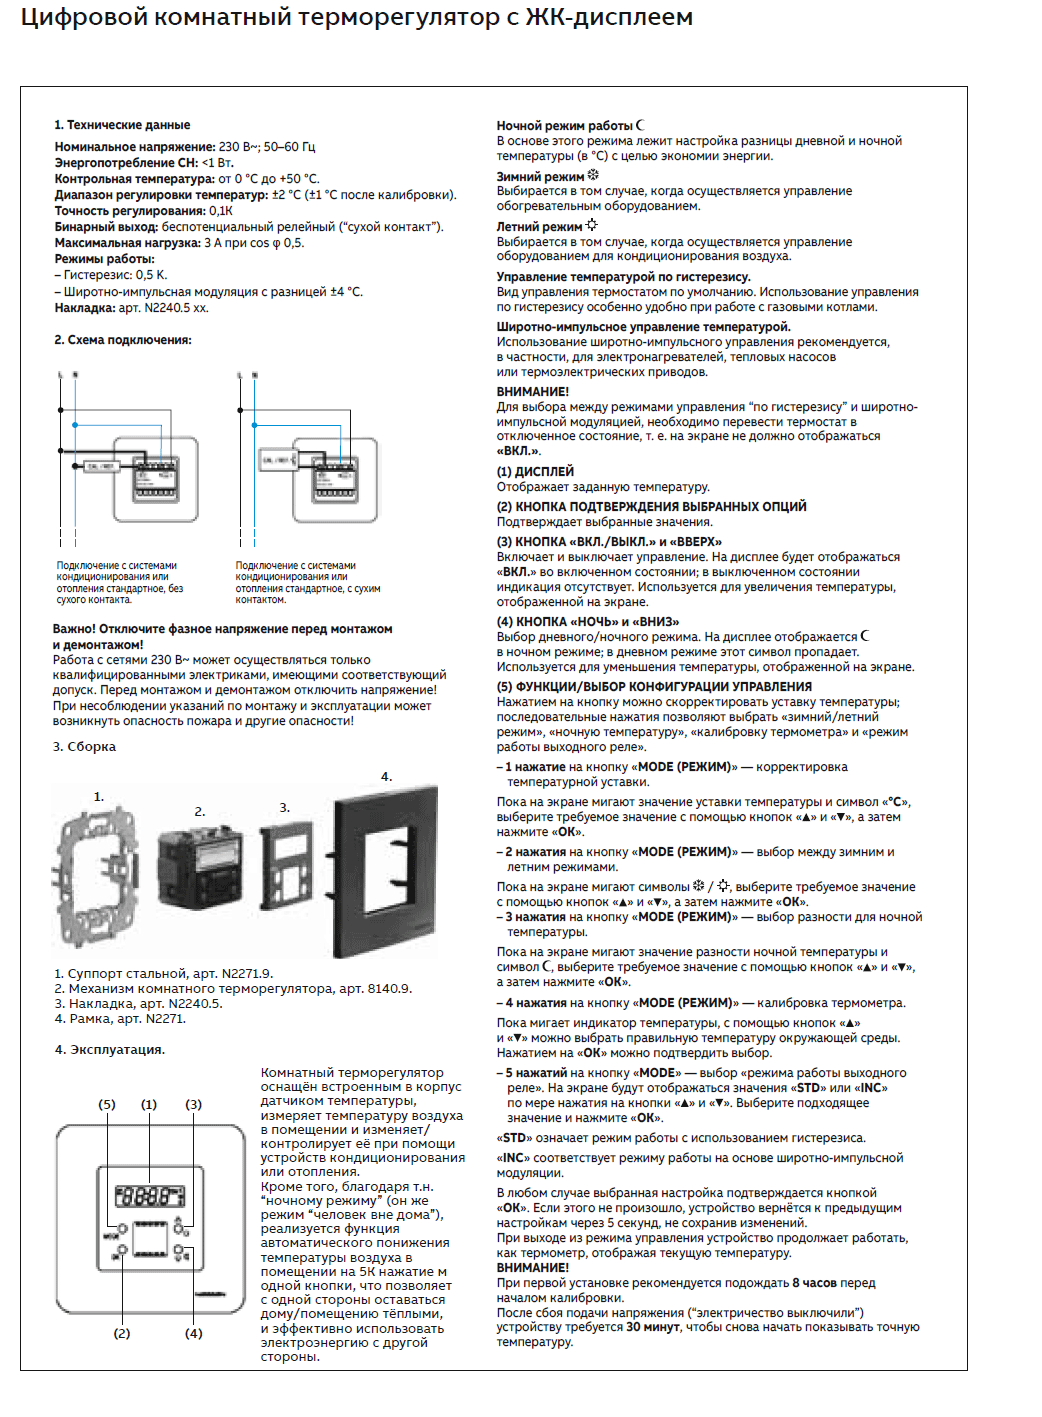 Механизм электронного терморегулятора с ЖК-экраном - 8140.5 (2CLA814050A1001) - Инструкция